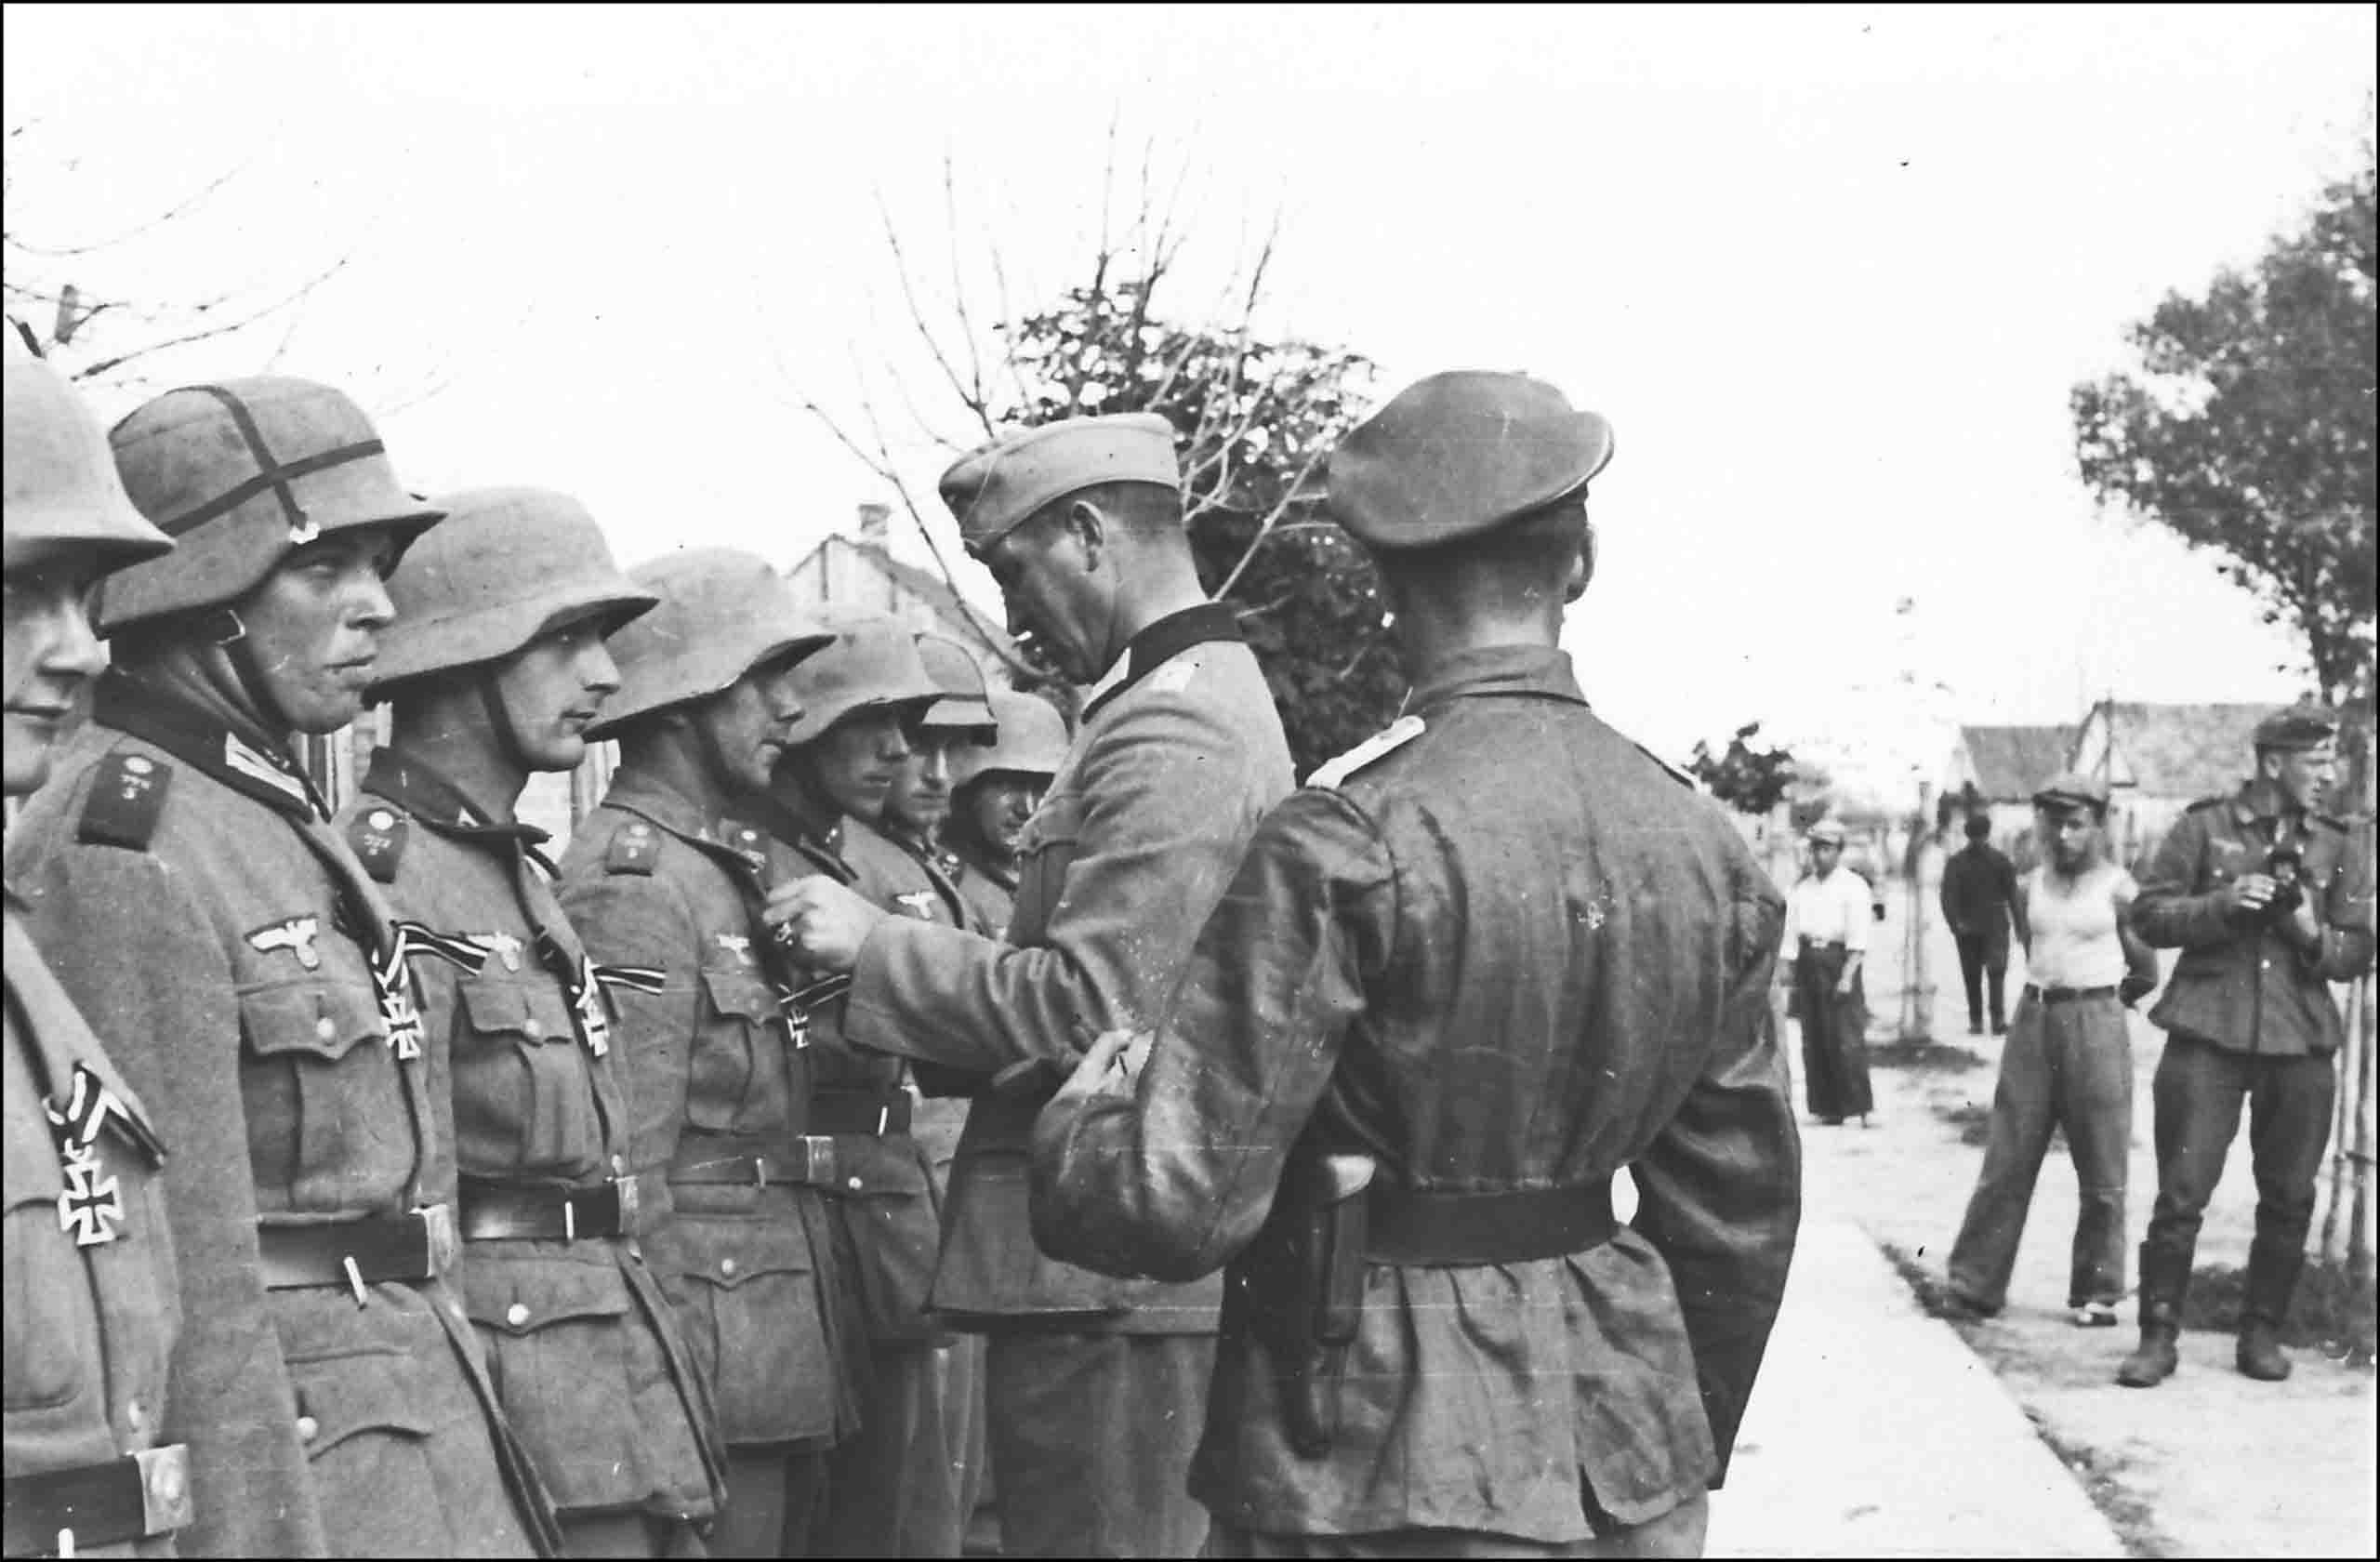 Wehrmacht exhibition. Награждение третьего рейха вторая мировая. Награждение солдат вермахта крестом.